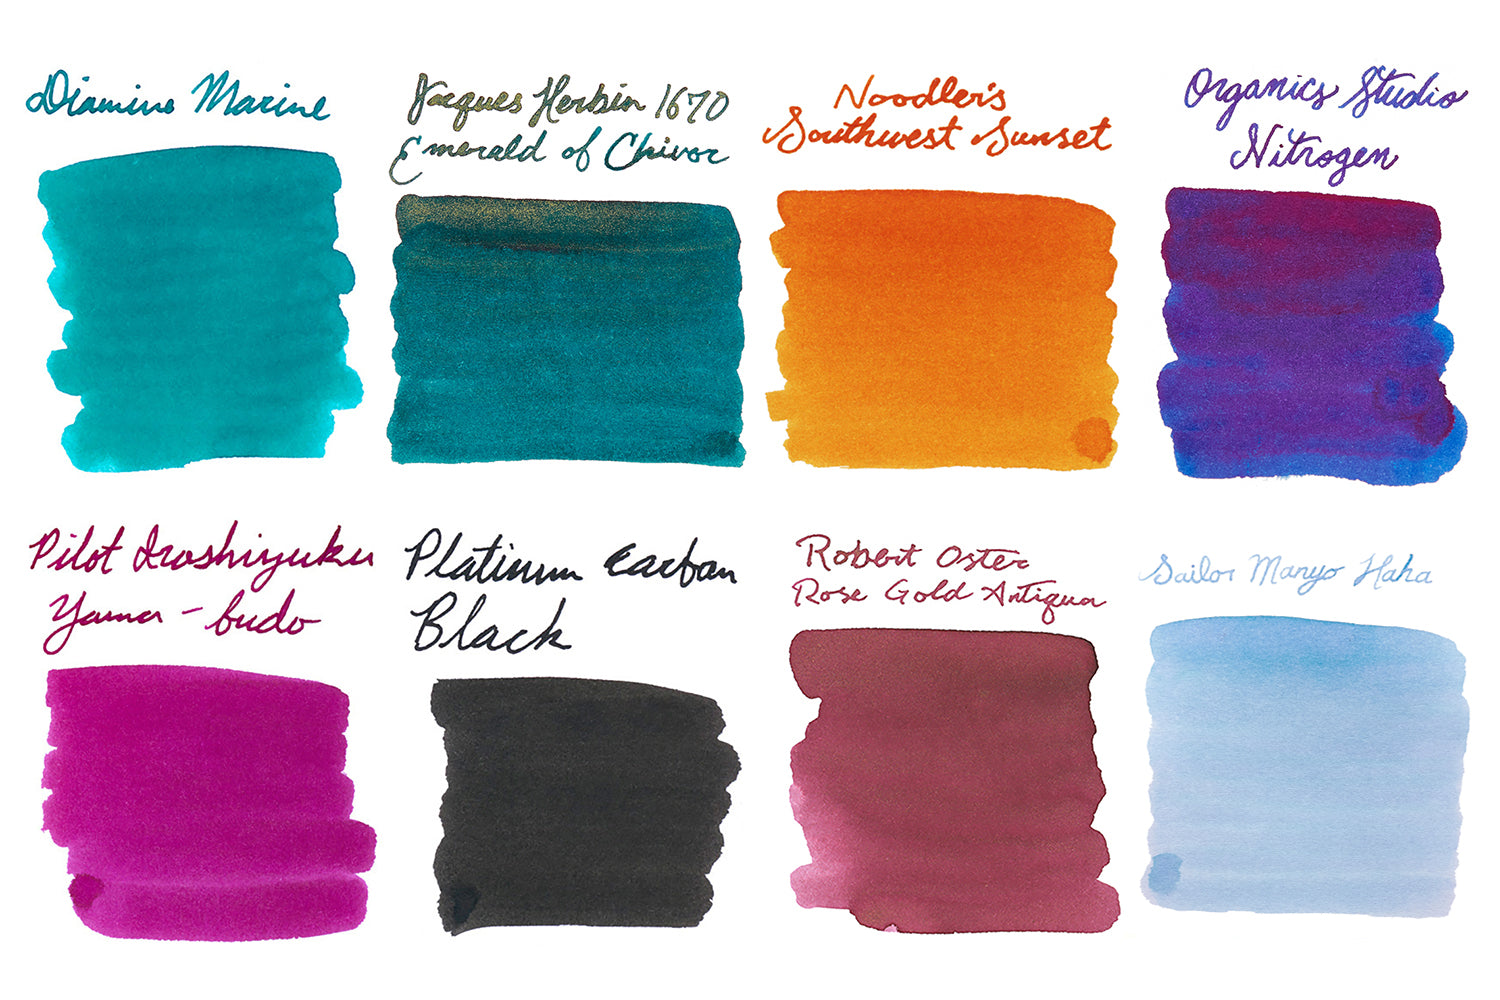 Noodlers Ink Color Samples